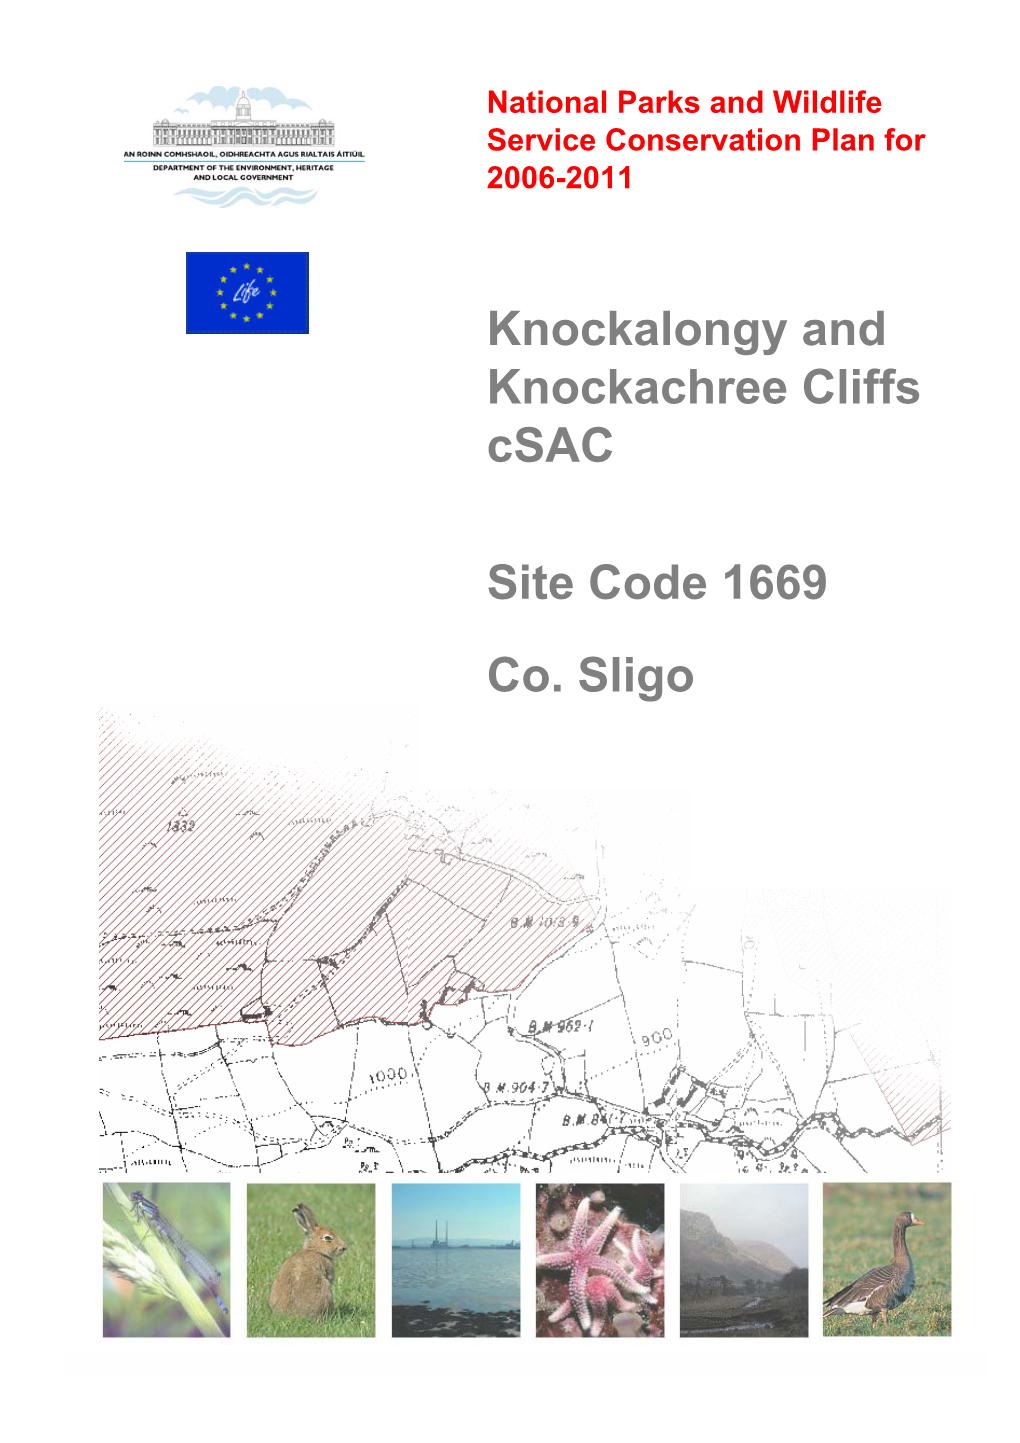 Knockalongy and Knockachree Cliffs Csac Site Code 1669 Co. Sligo